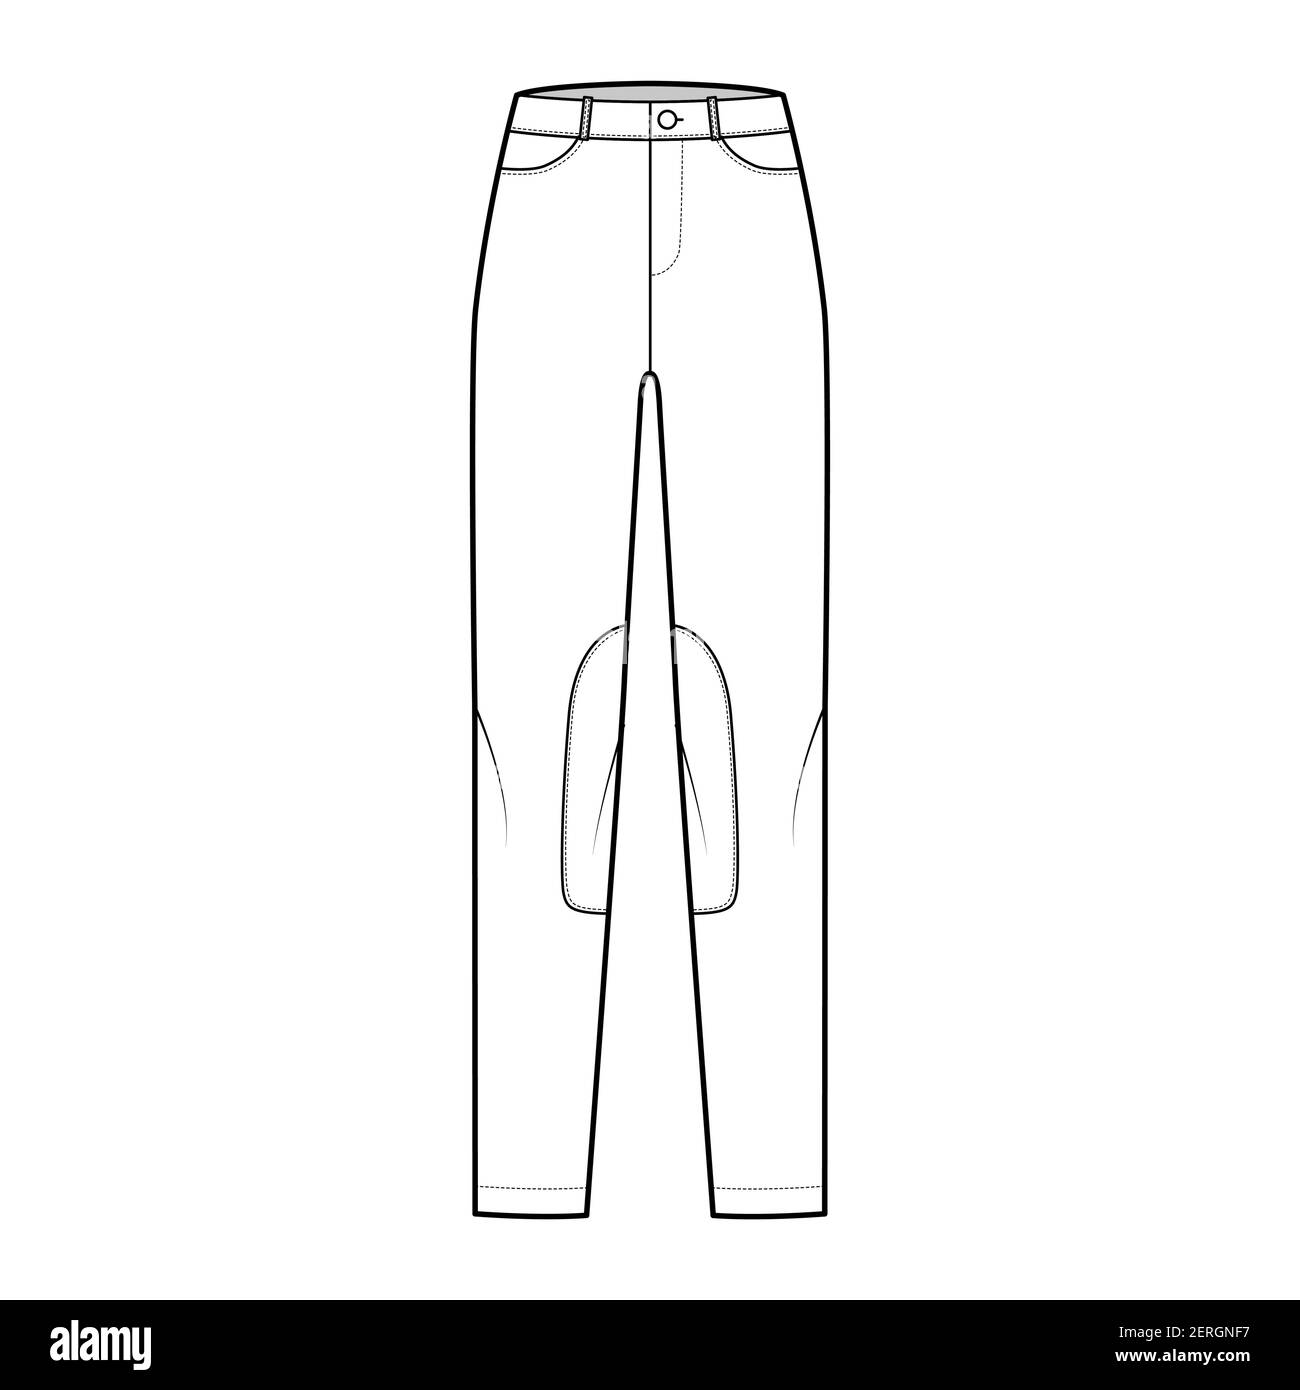 Ensemble de jeans Kentucky Jodhpurs pantalons denim illustration technique de la mode avec taille basse, taille, poches, passants de ceinture, longueur complète. Vêtements à fond plat sur le devant, de couleur blanche. Maquette CAD pour femmes et hommes Illustration de Vecteur